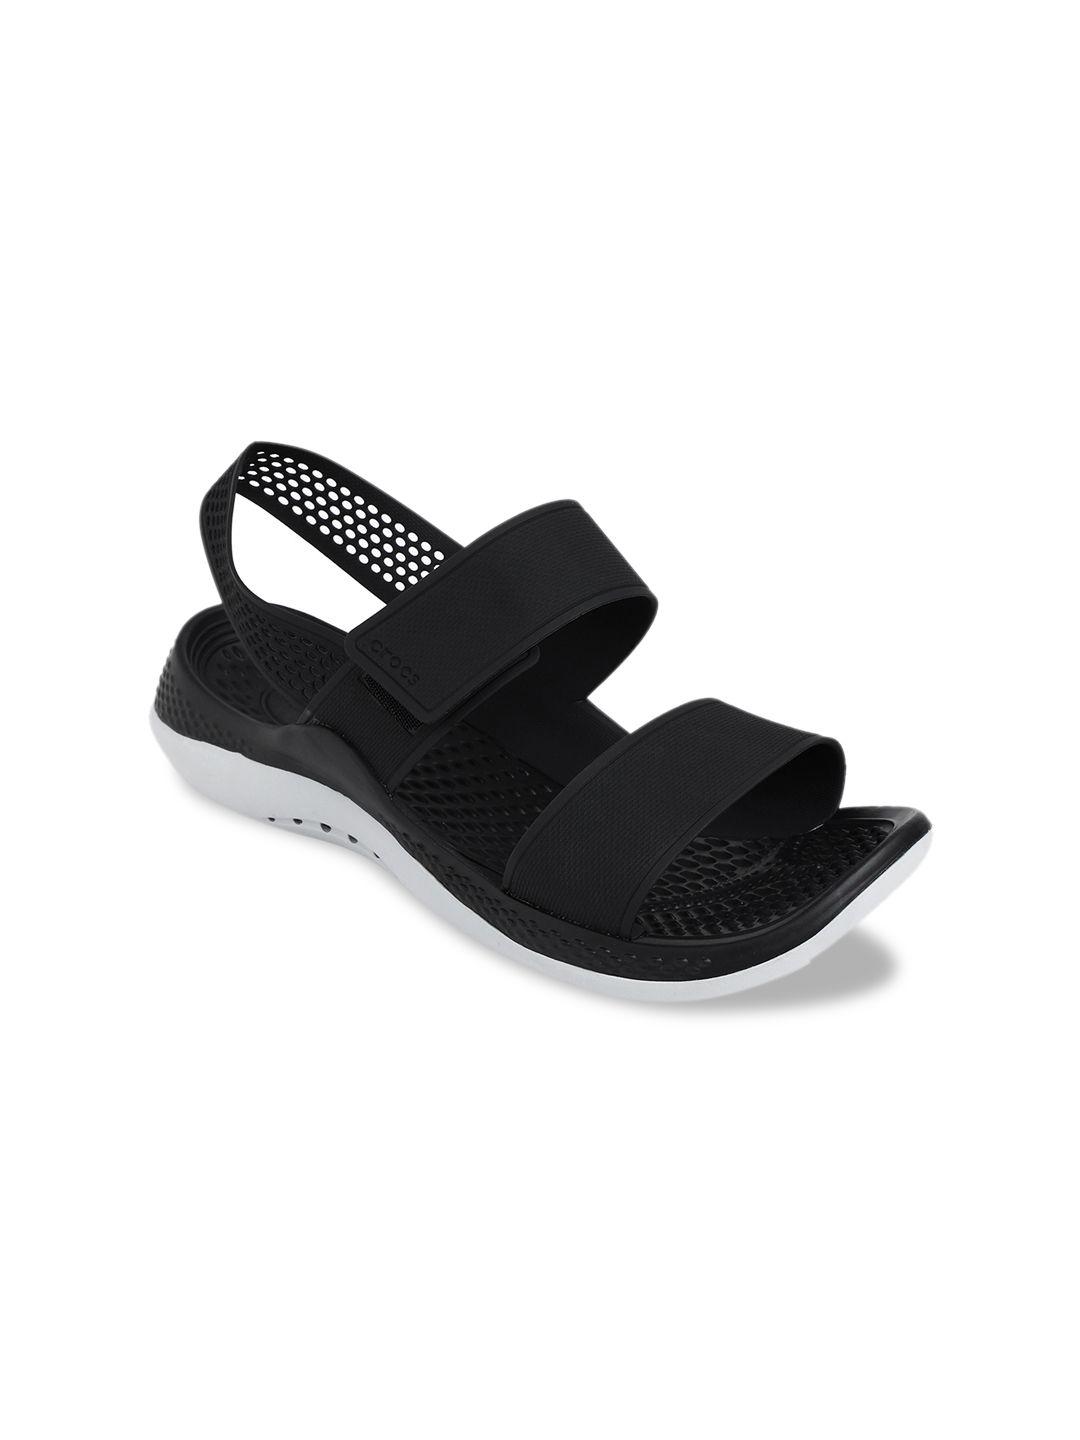 crocs women black & grey comfort sandals